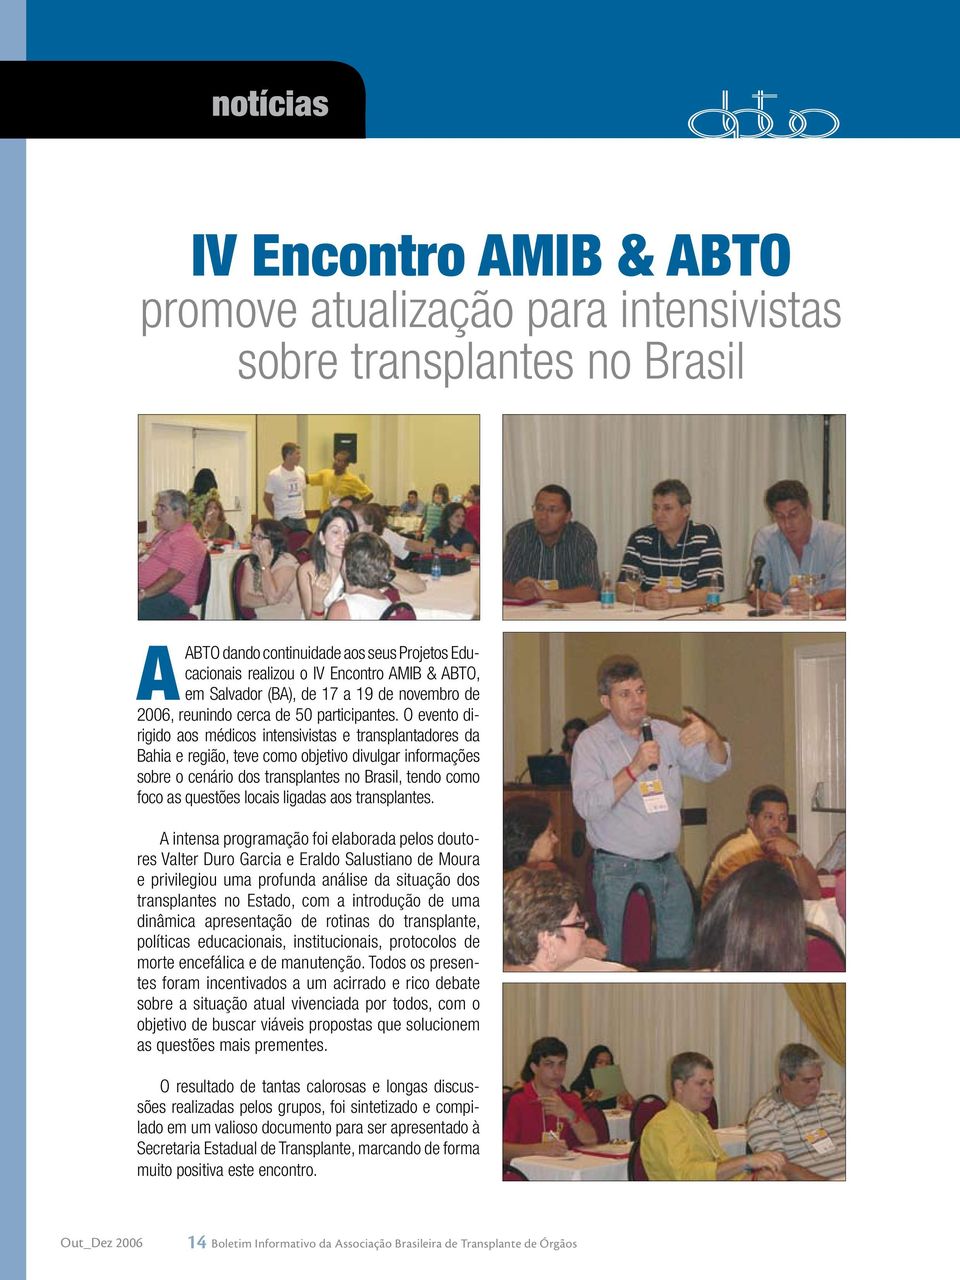 O evento dirigido aos médicos intensivistas e transplantadores da Bahia e região, teve como objetivo divulgar informações sobre o cenário dos transplantes no Brasil, tendo como foco as questões